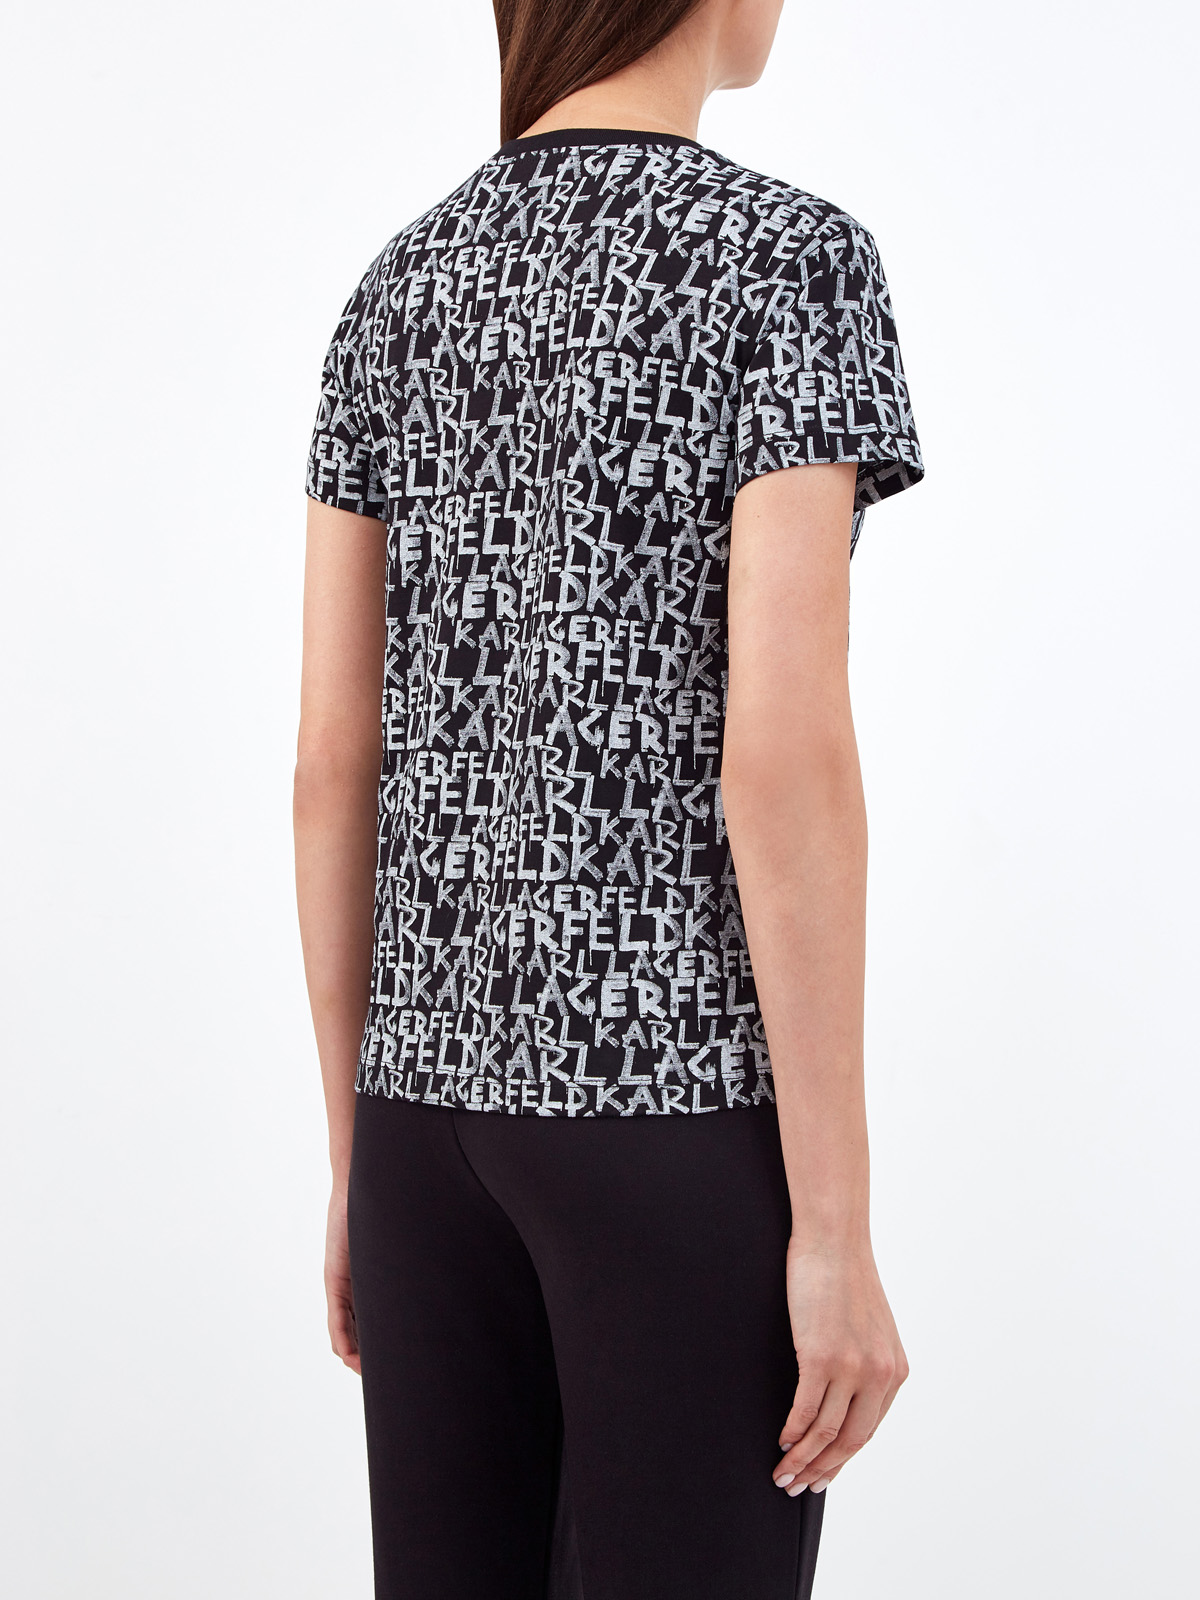 Хлопковая футболка с контрастным принтом в стиле леттеринг KARL LAGERFELD, цвет черный, размер XS;S;M;L - фото 4